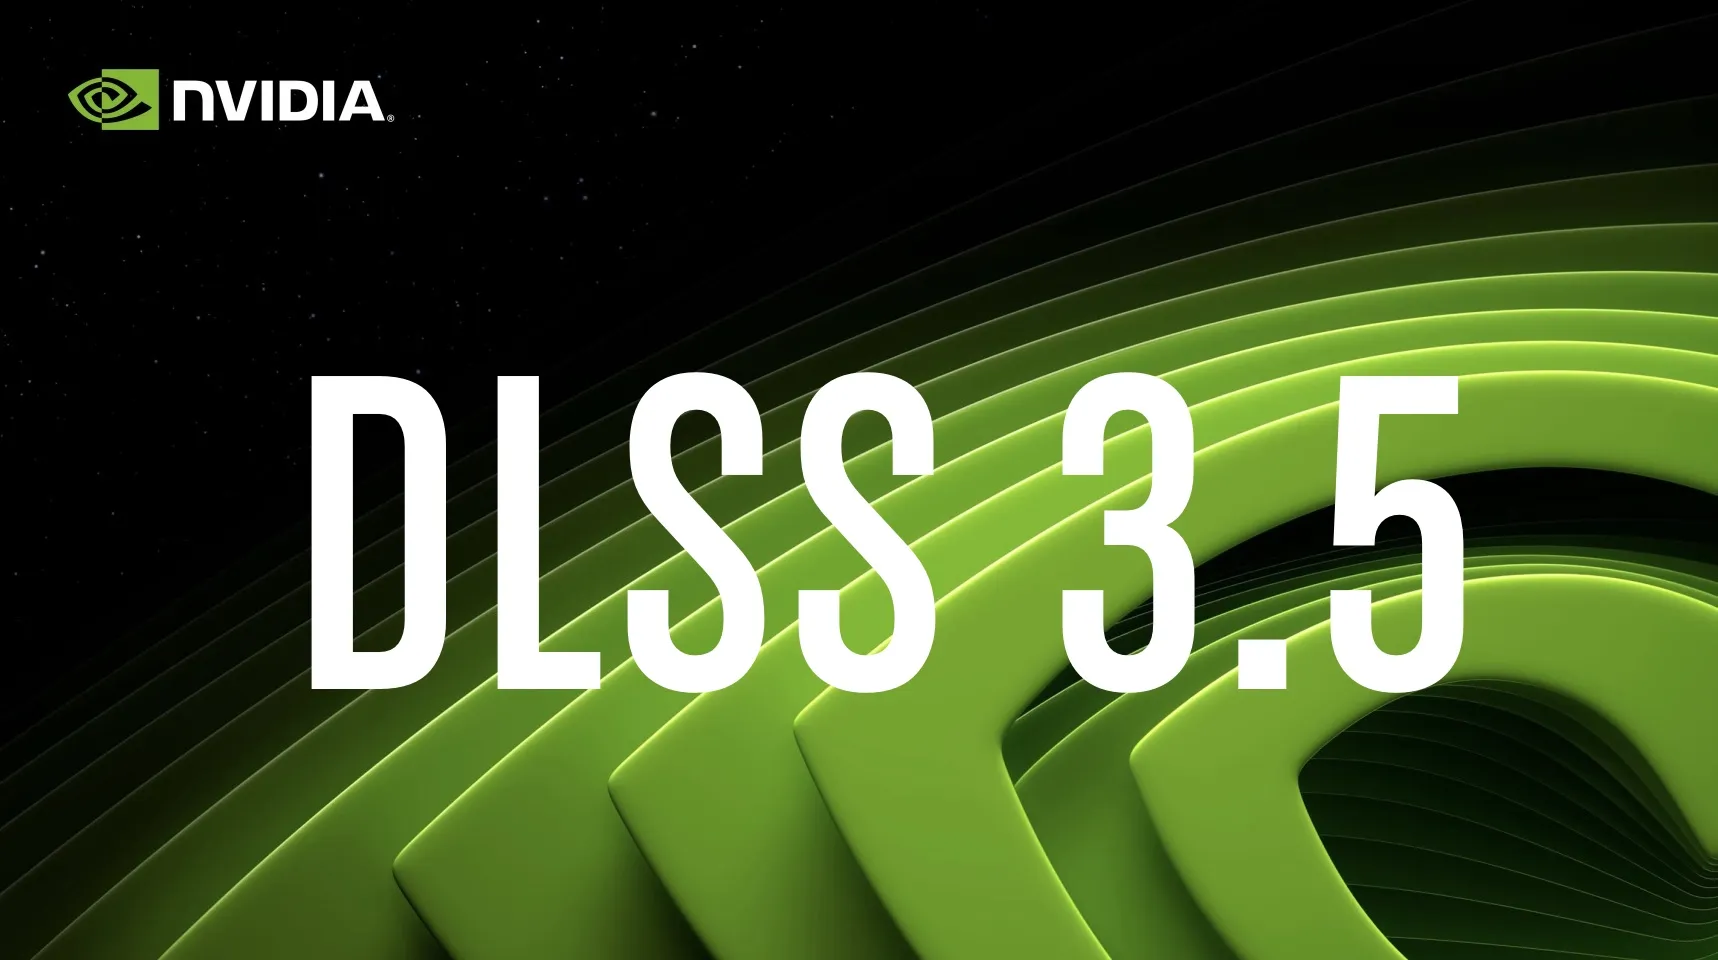 Nvidia Dlss 3 5 Logo